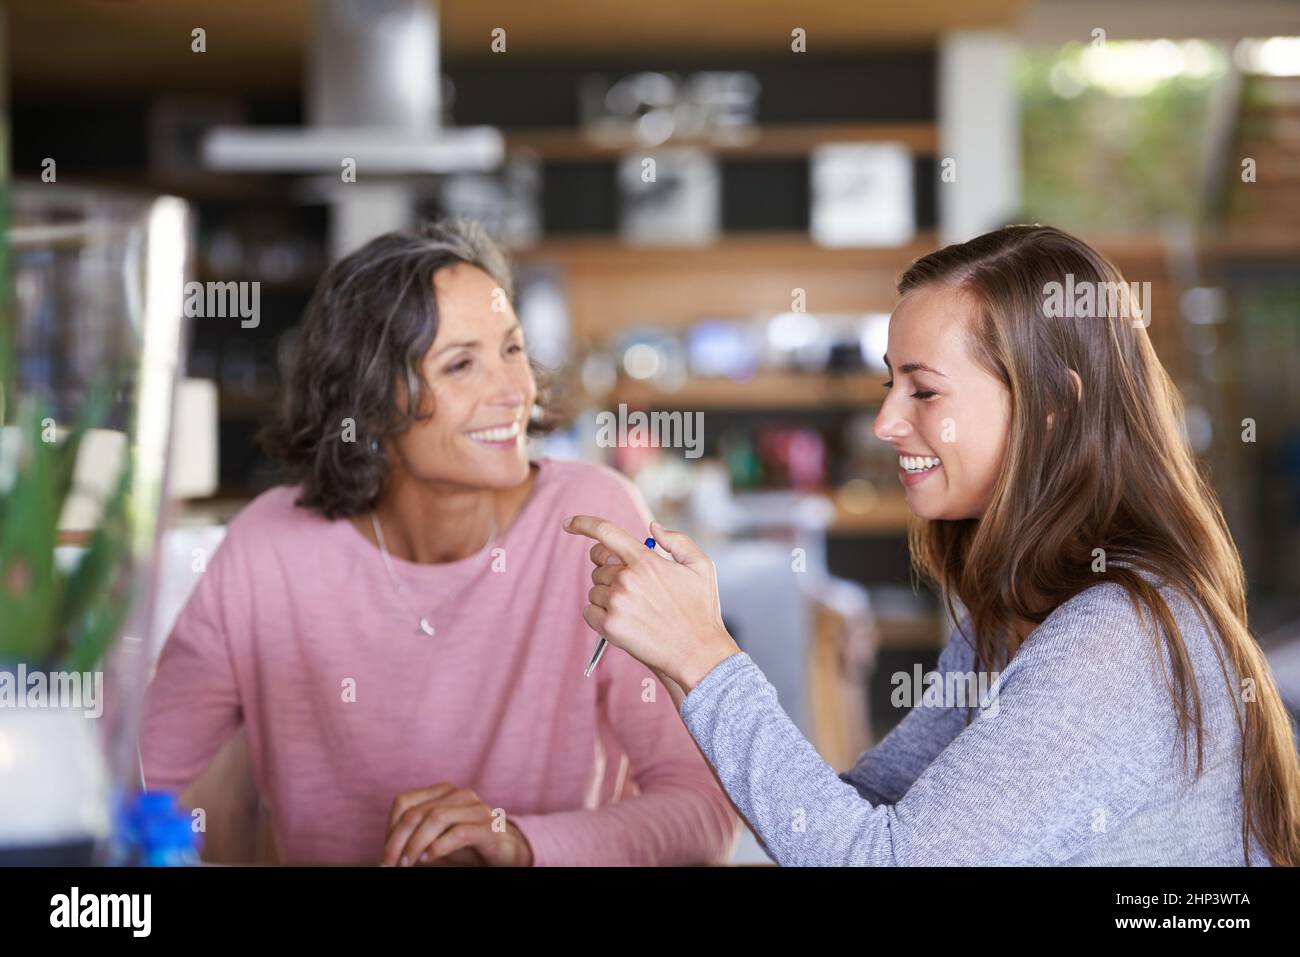 Lei eredita definitivamente il mio senso dell'umorismo. Una madre e una figlia si legano in un caffè. Foto Stock